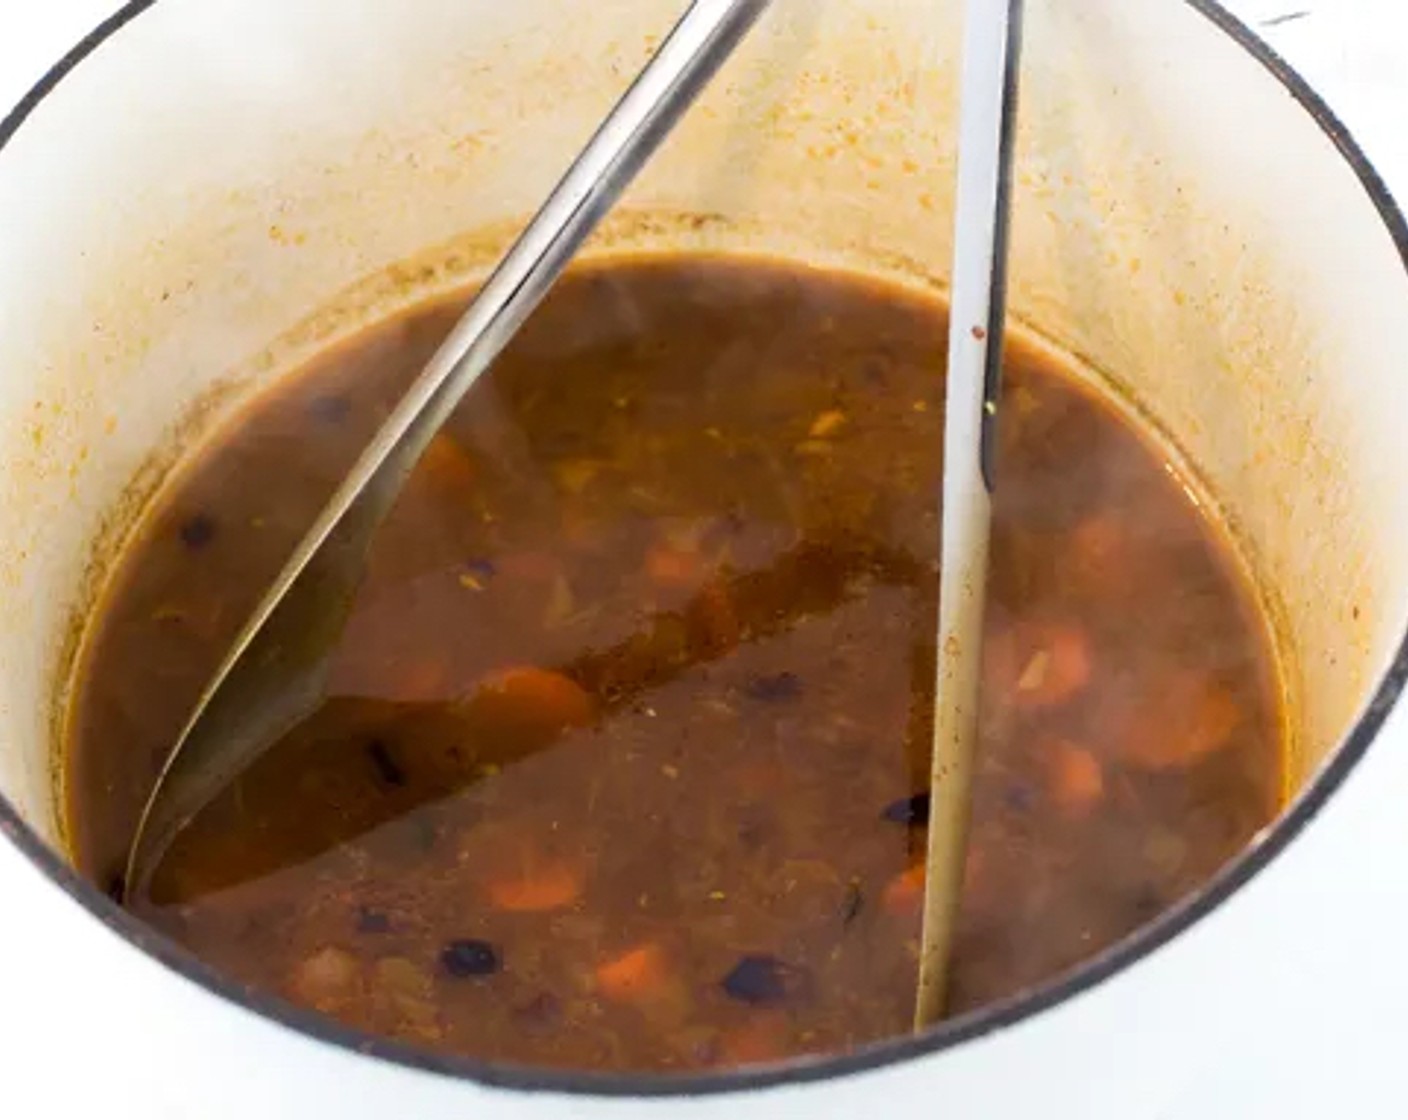 Schritt 3 Brühe köcheln lassen. Currypaste (1 EL), Brühe (430 ml) und Fischsauce (1 TL) einrühren. Zum Kochen bringen, dann auf ein Köcheln reduzieren und 10 Minuten kochen lassen.